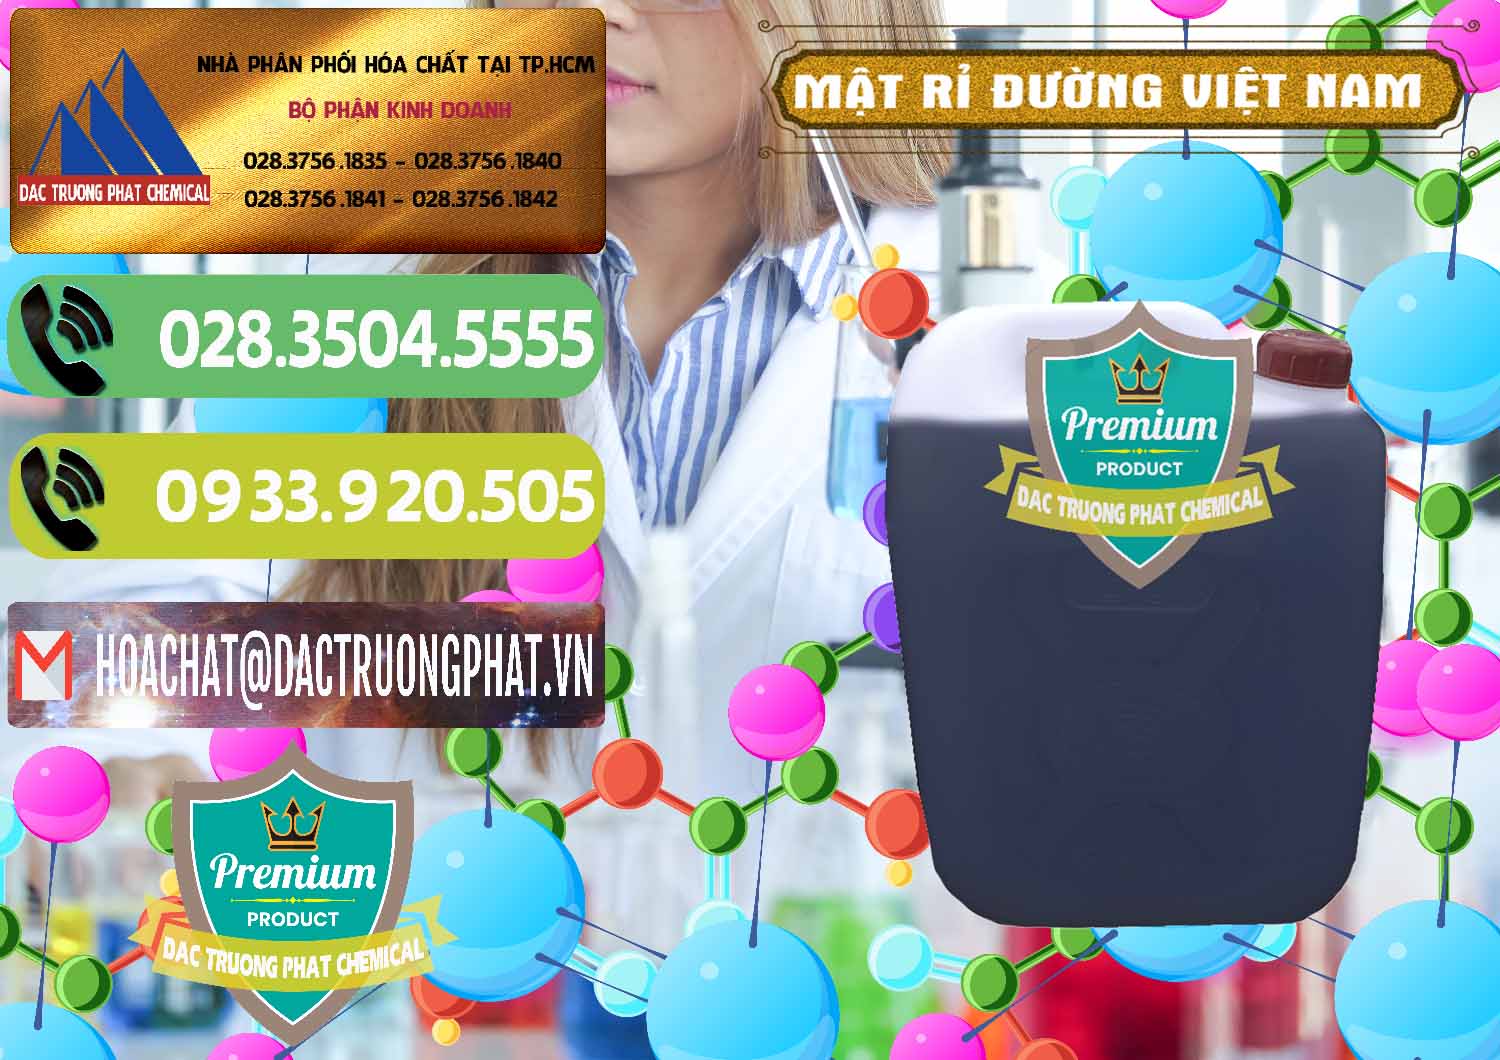 Nhà phân phối & cung cấp Mật Rỉ Đường Việt Nam - 0306 - Cty kinh doanh & phân phối hóa chất tại TP.HCM - hoachatmientay.vn